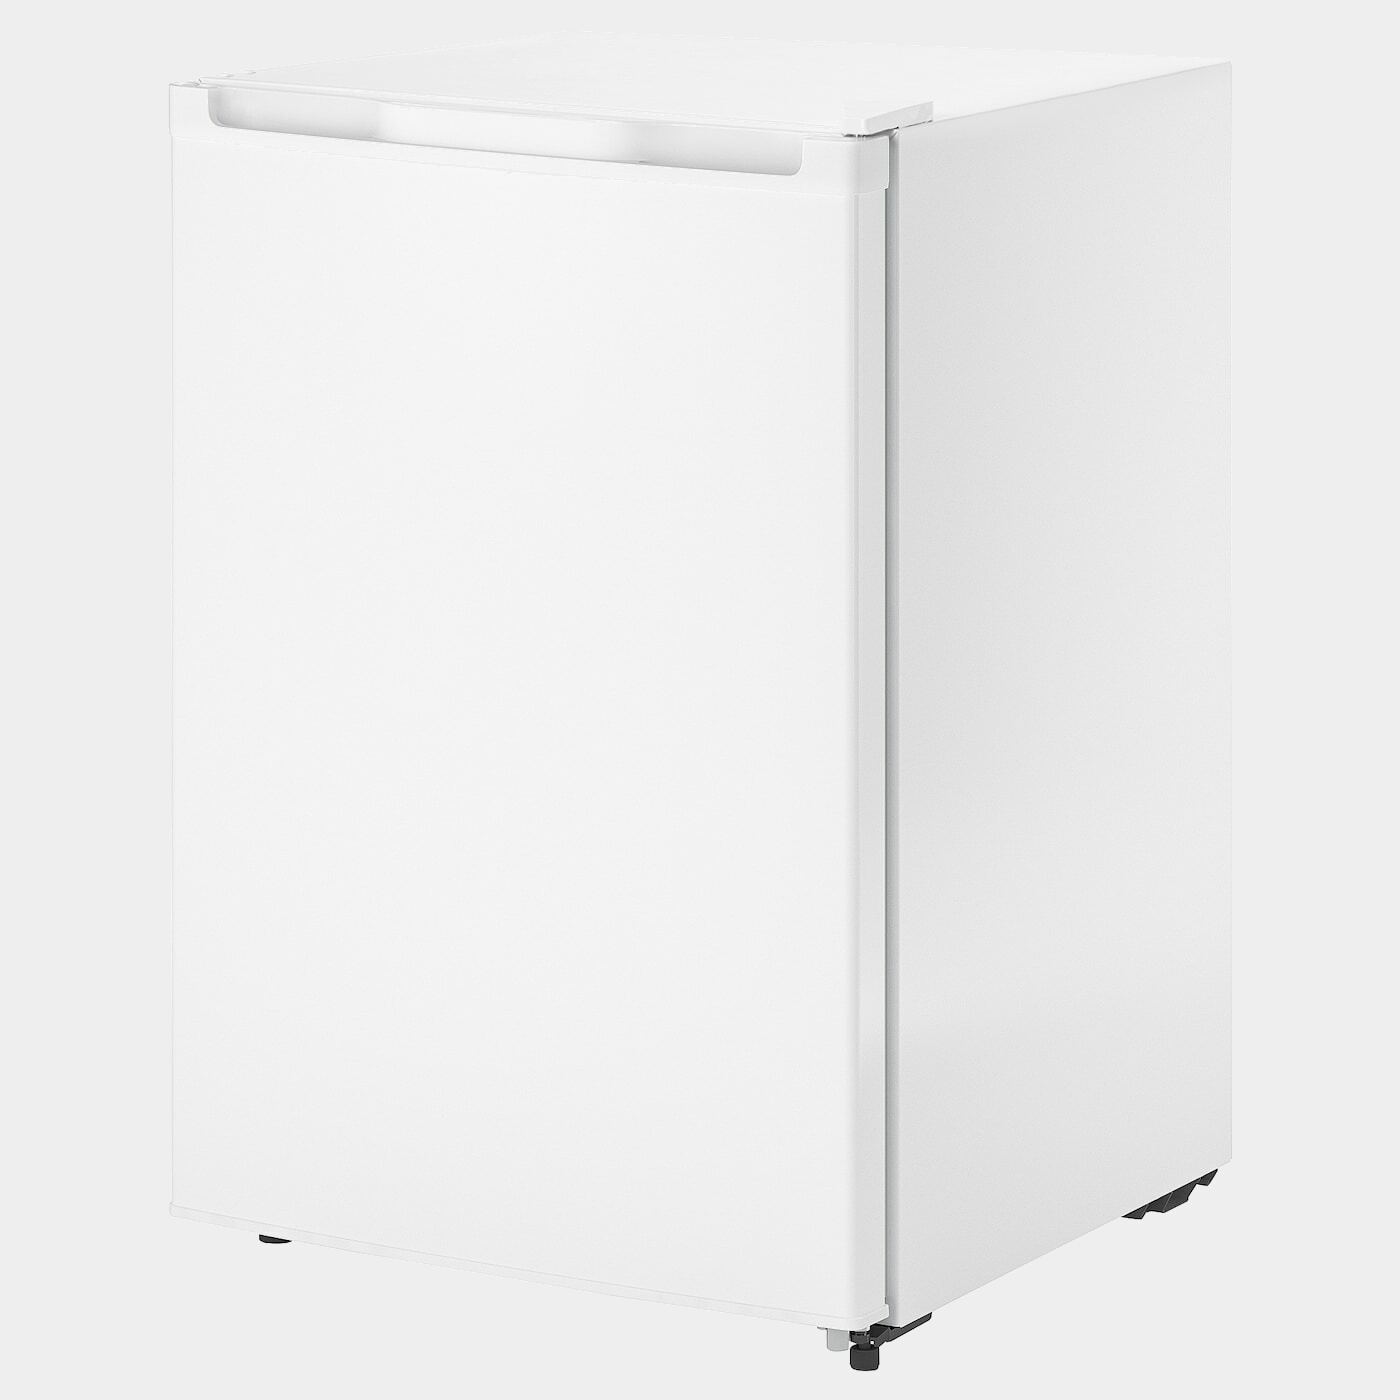 LAGAN Kühlschrank mit Gefrierfach  -  - Möbel Ideen für dein Zuhause von Home Trends. Möbel Trends von Social Media Influencer für dein Skandi Zuhause.